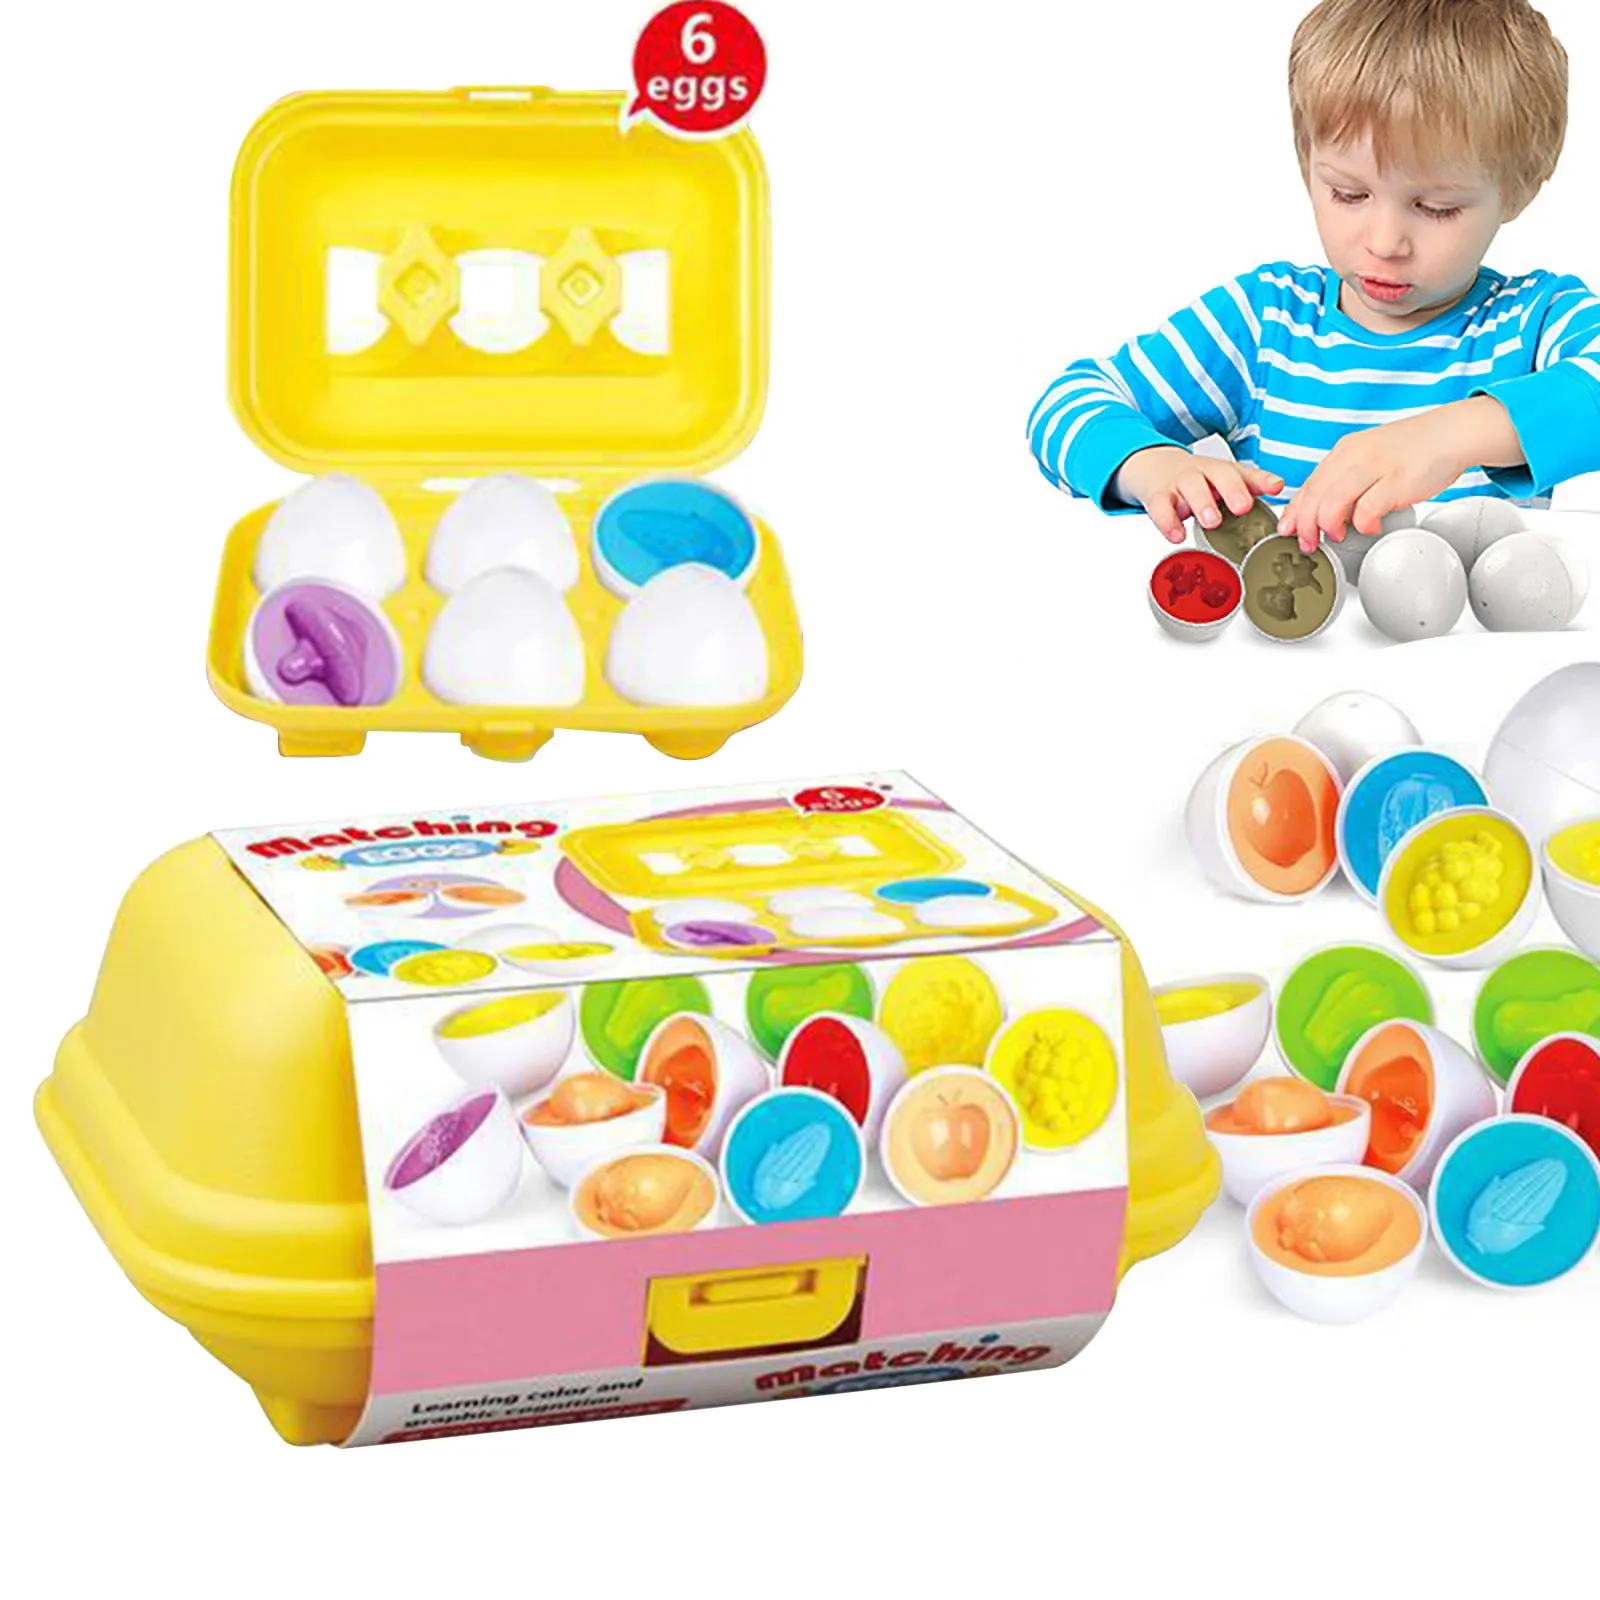 Conjunto de ovos de harmonização peep easter egg toys 6pcs brinquedo  educacional educação desenvolvimento precoce montessori brinquedo  pré-escolar jogo para - AliExpress